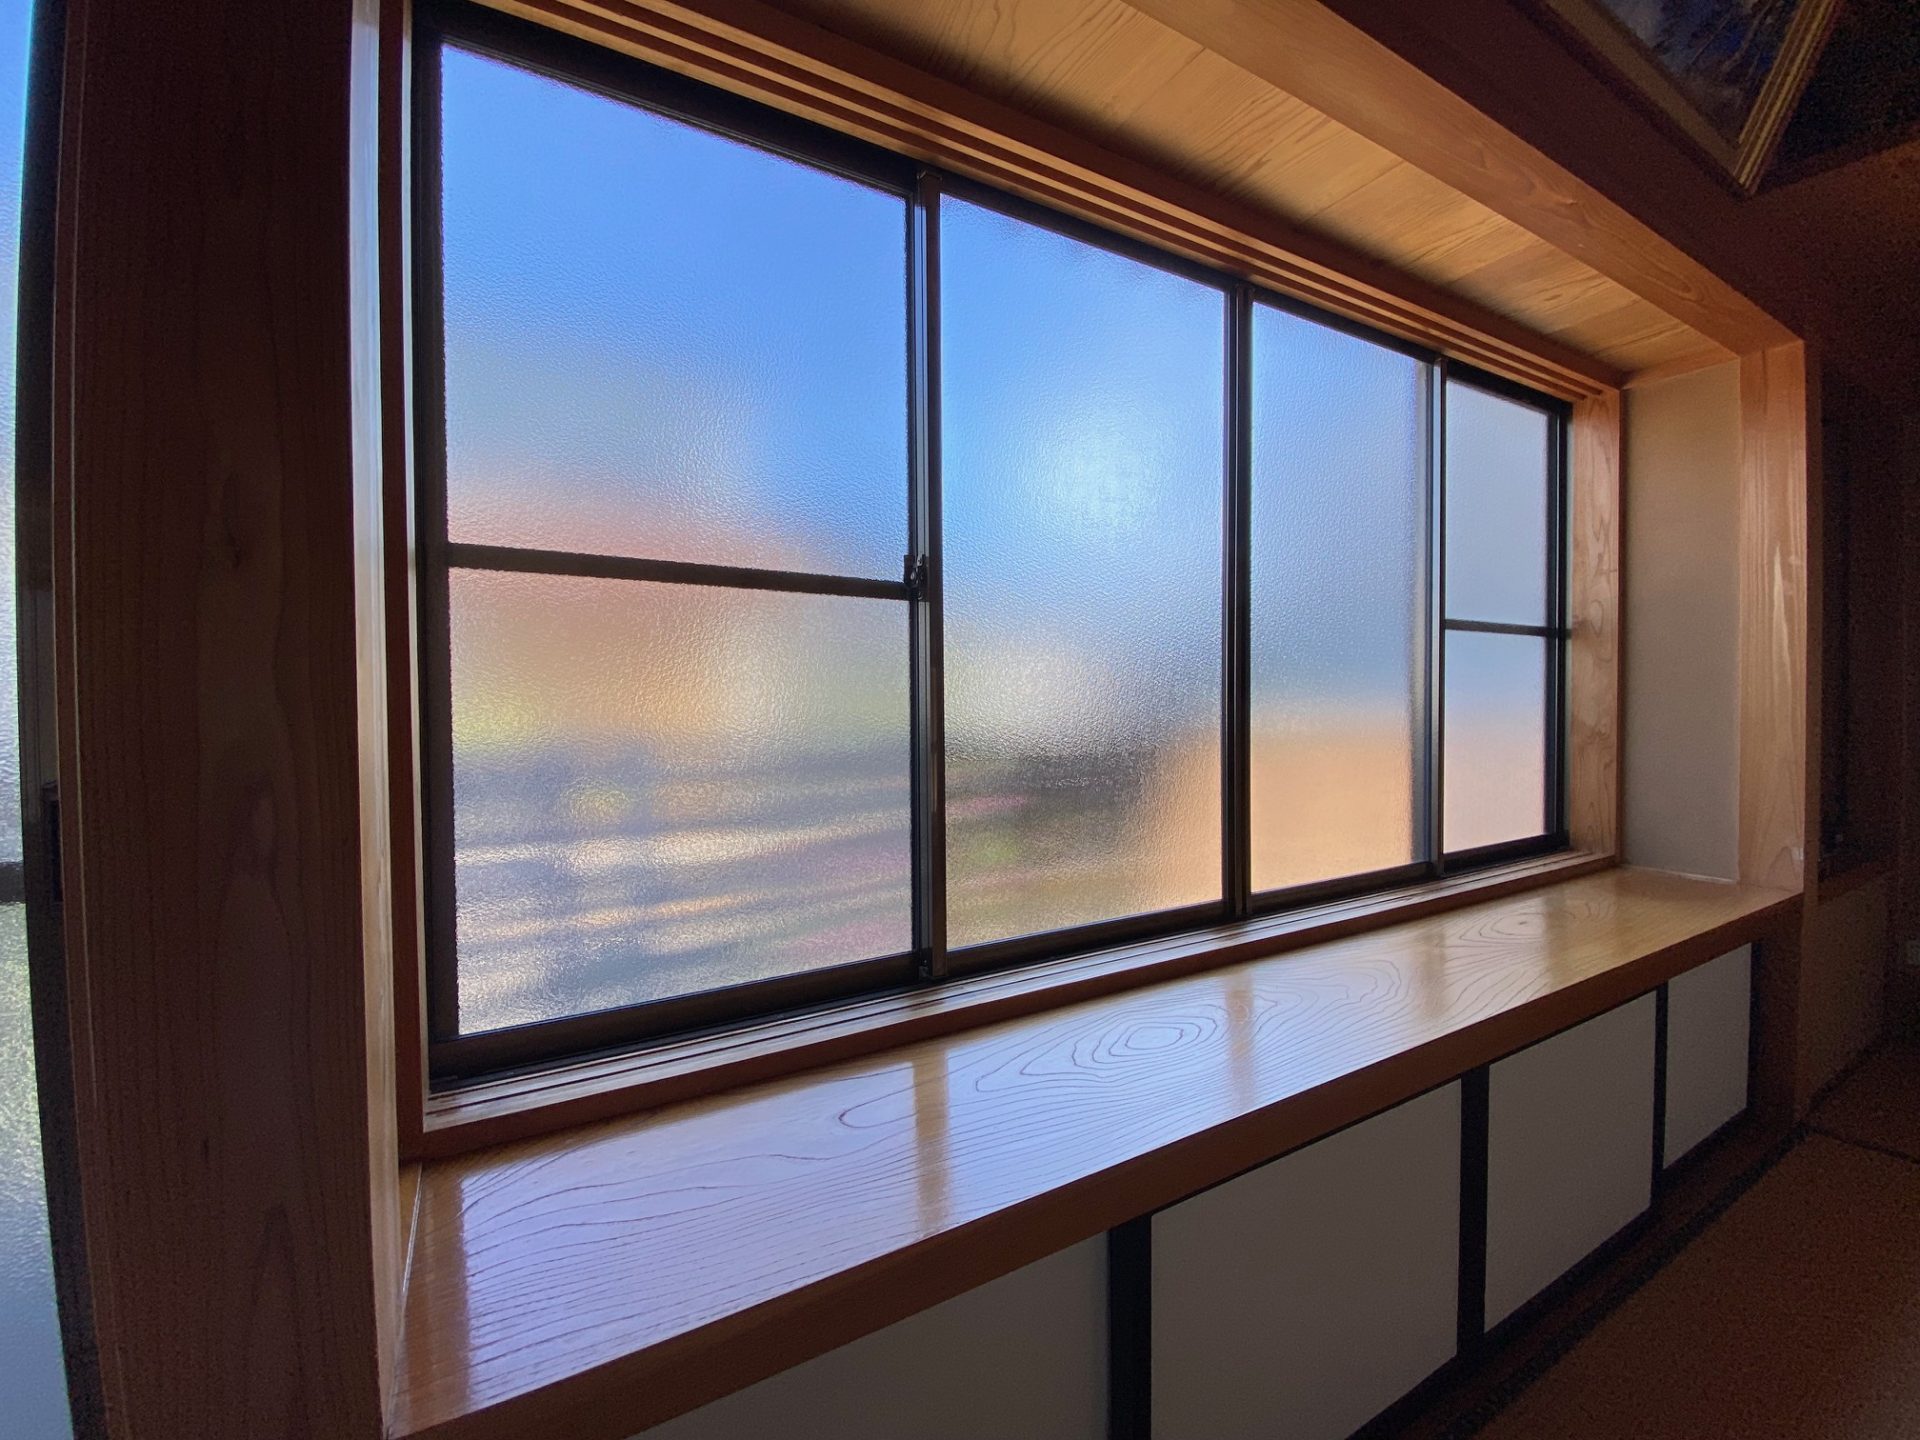 新潟市　室内の雰囲気も考えた内窓の製品選定の施工事例